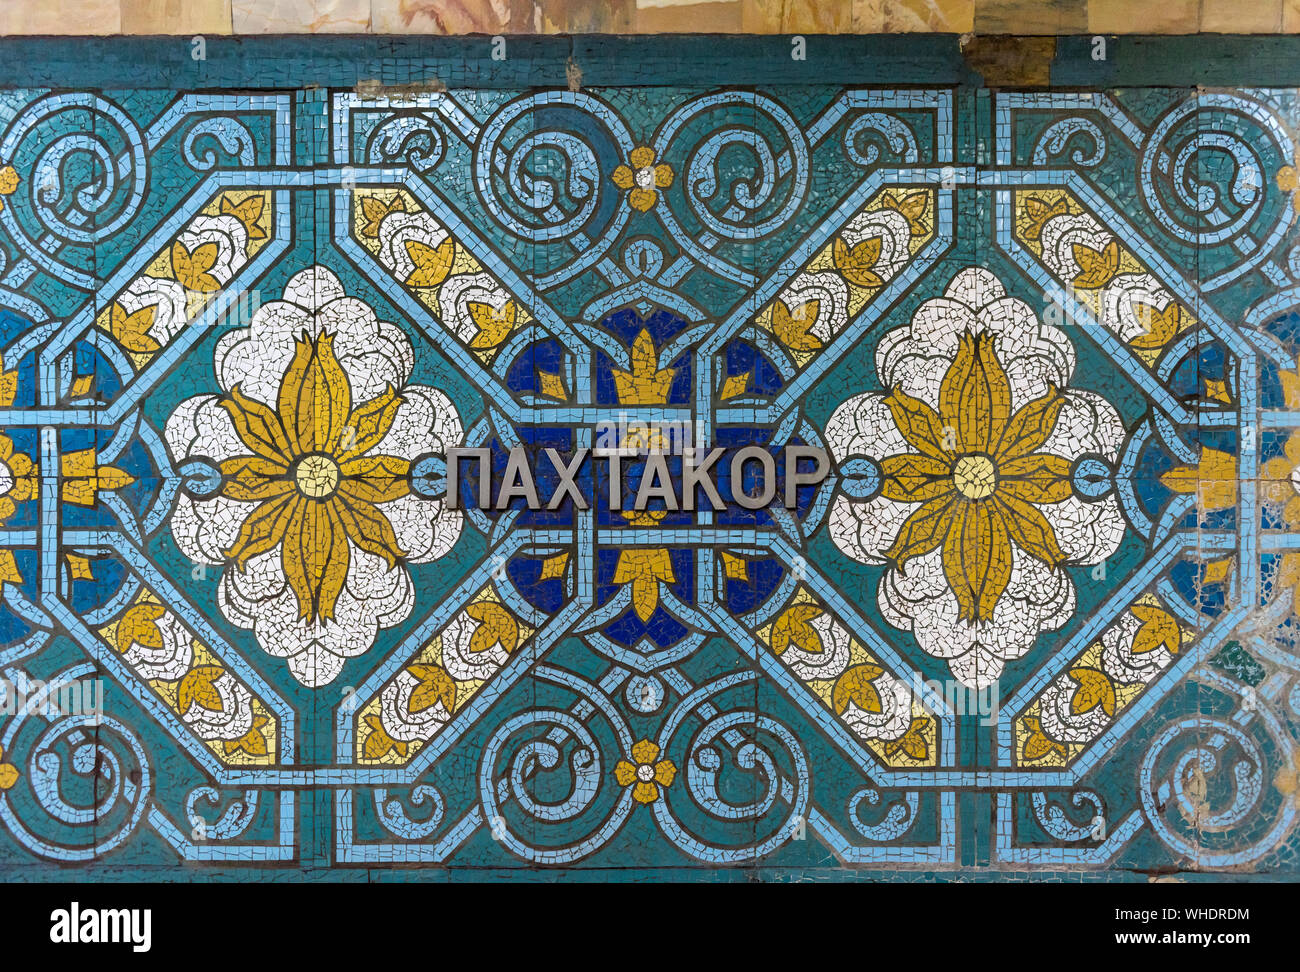 Décoration d'intérieur de la station de métro, de Pakhtakor Tachkent, Ouzbékistan Banque D'Images